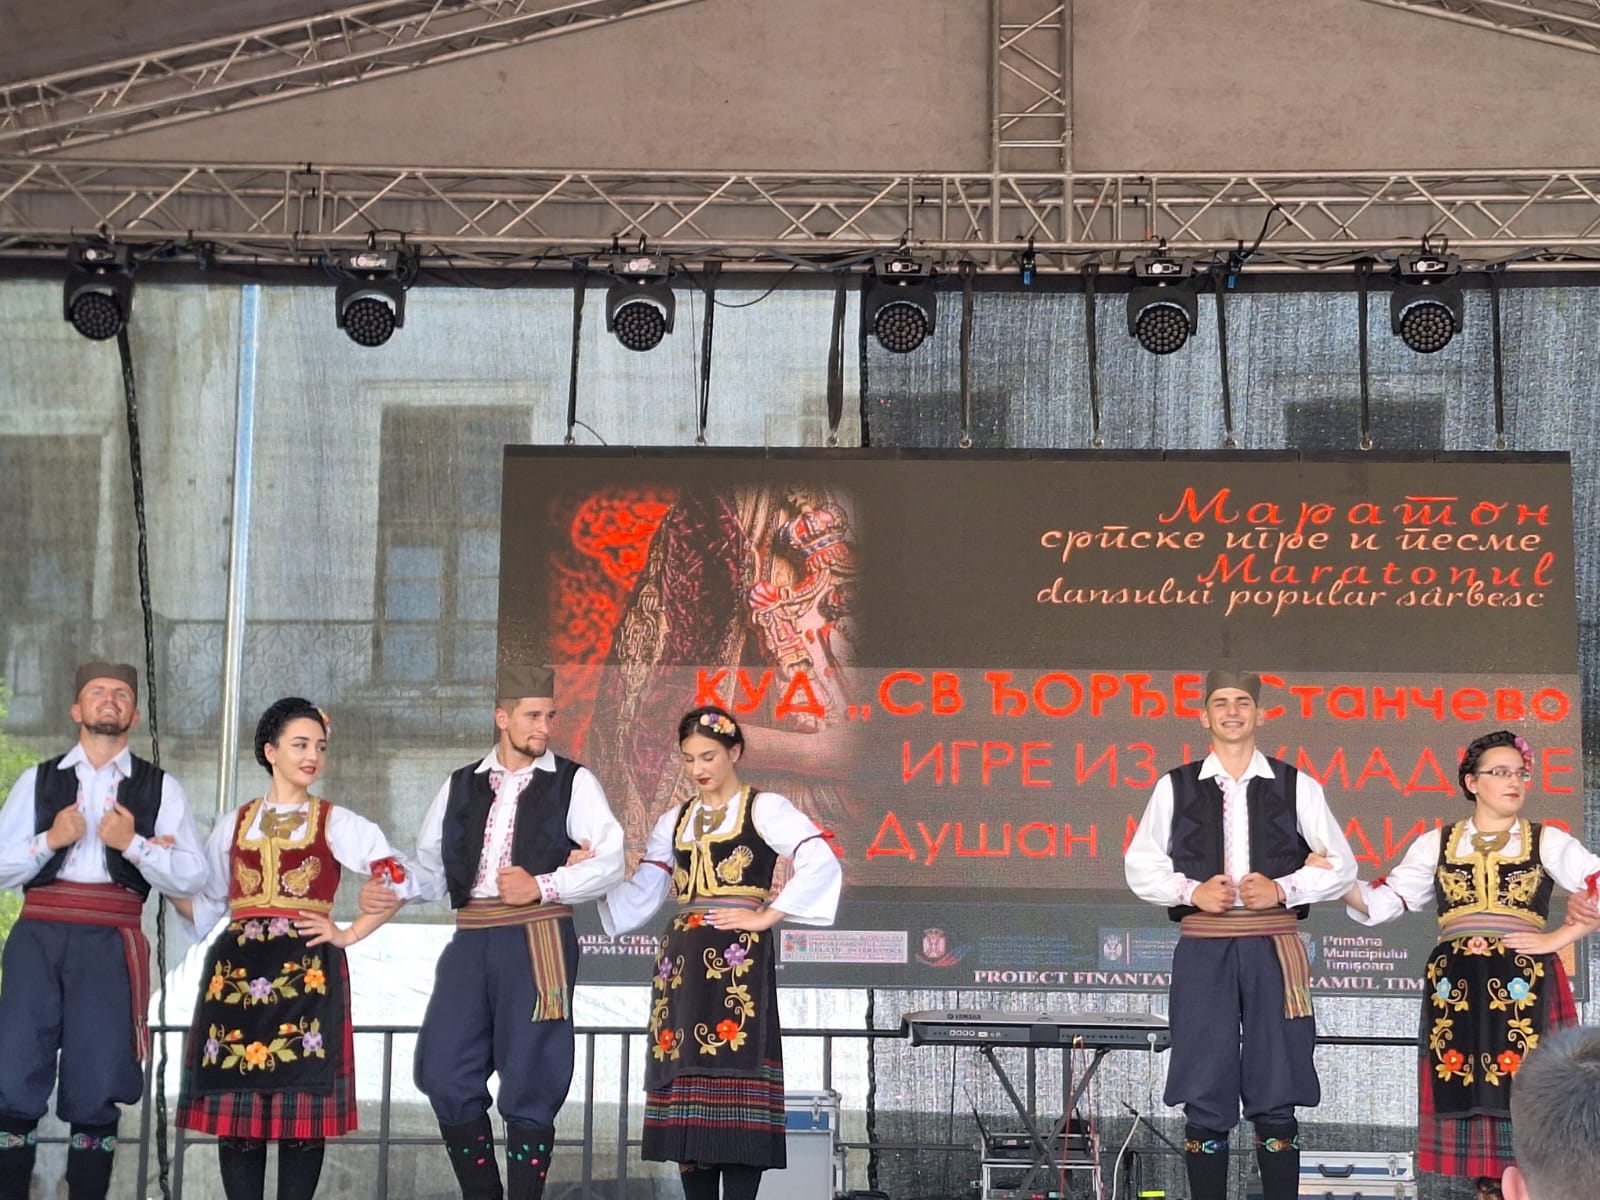 Festivalul Maratonul dansului popular sârbesc (5)